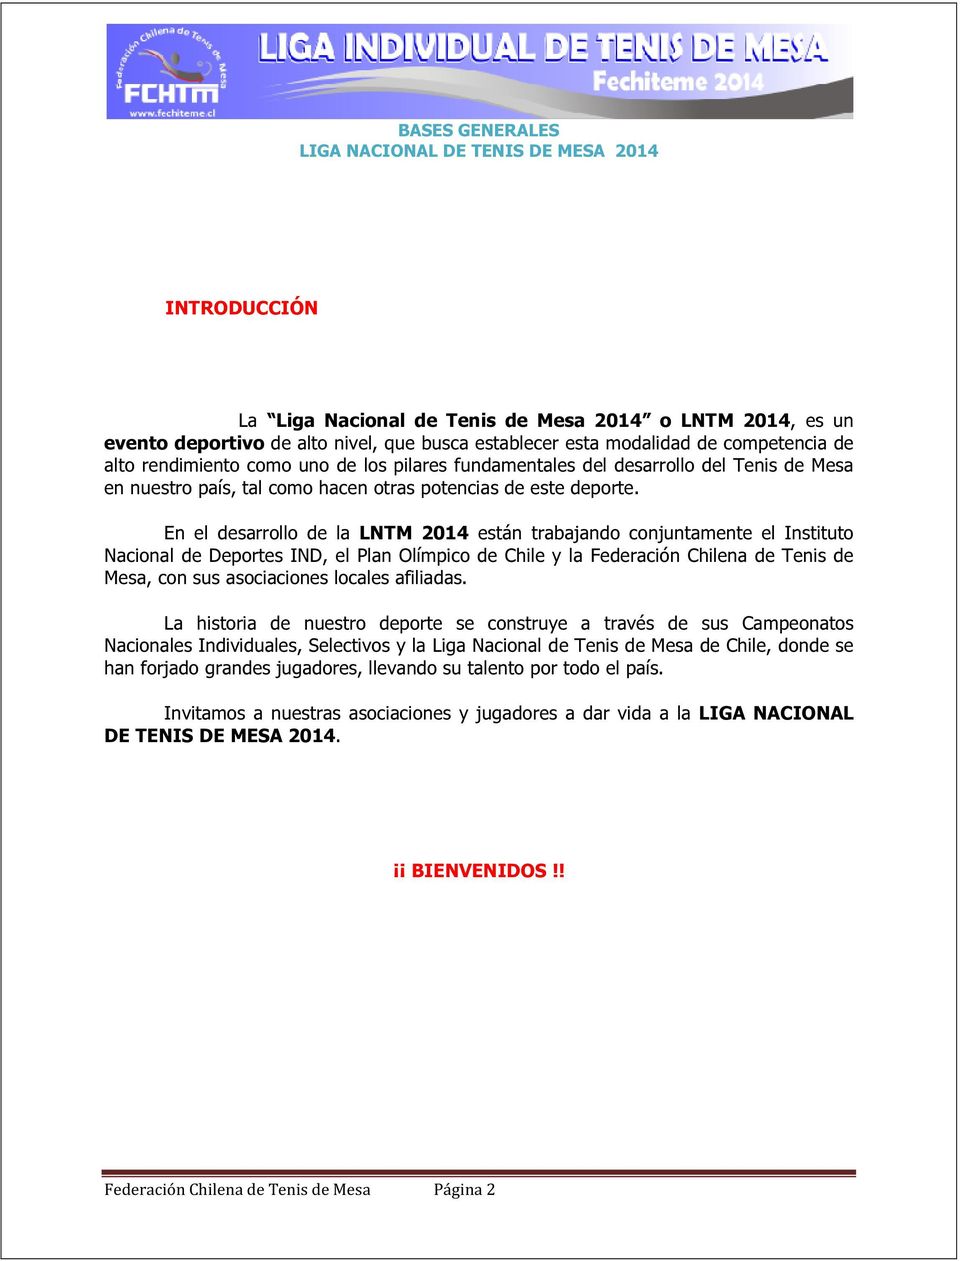 En el desarrollo de la LNTM 2014 están trabajando conjuntamente el Instituto Nacional de Deportes IND, el Plan Olímpico de Chile y la Federación Chilena de Tenis de Mesa, con sus asociaciones locales